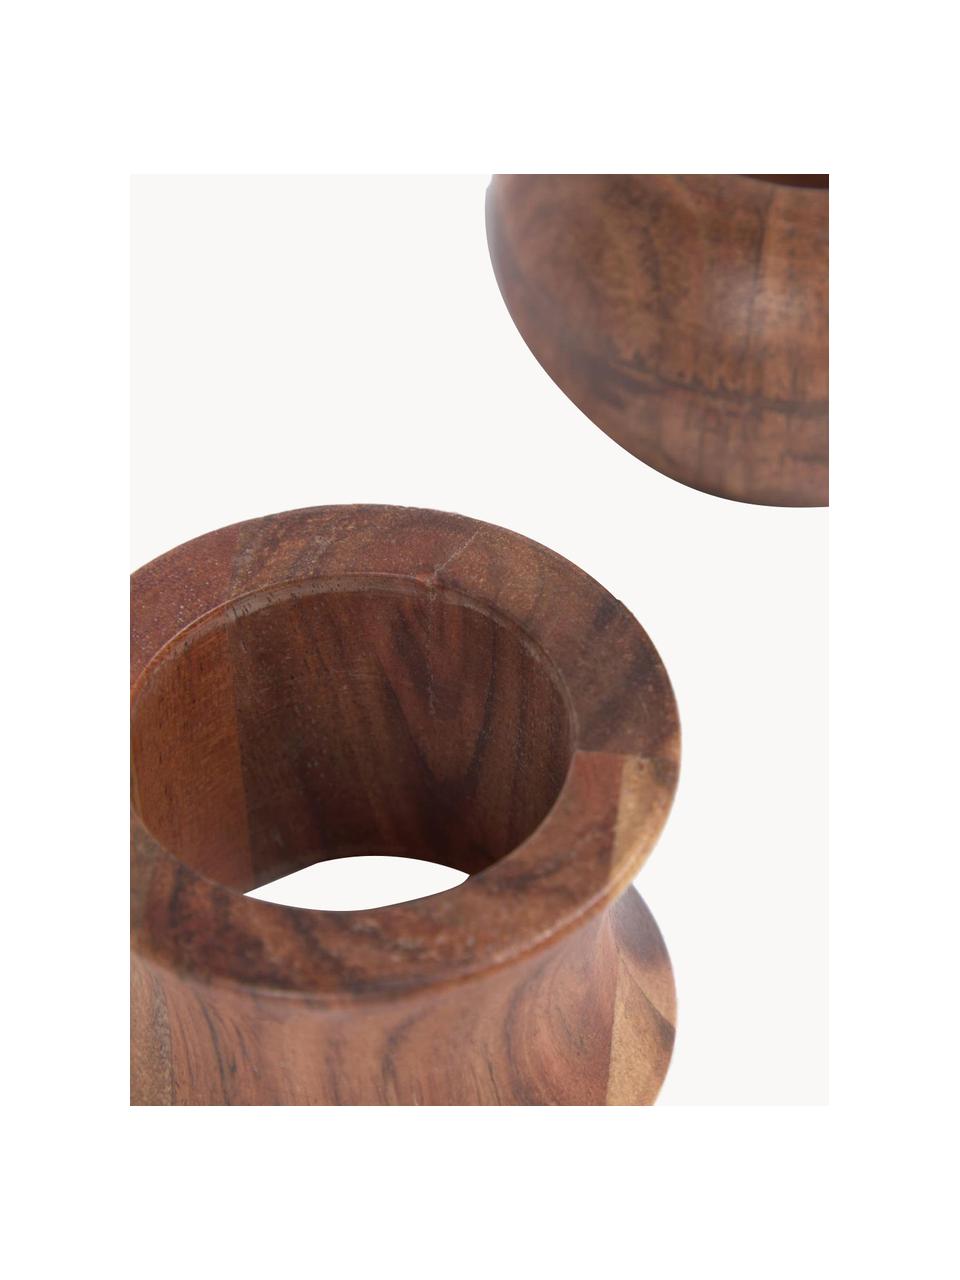 Servetringenset Tamer van acaciahout, set van 2, Acaciahout, massief, Donker hout, Set met verschillende formaten